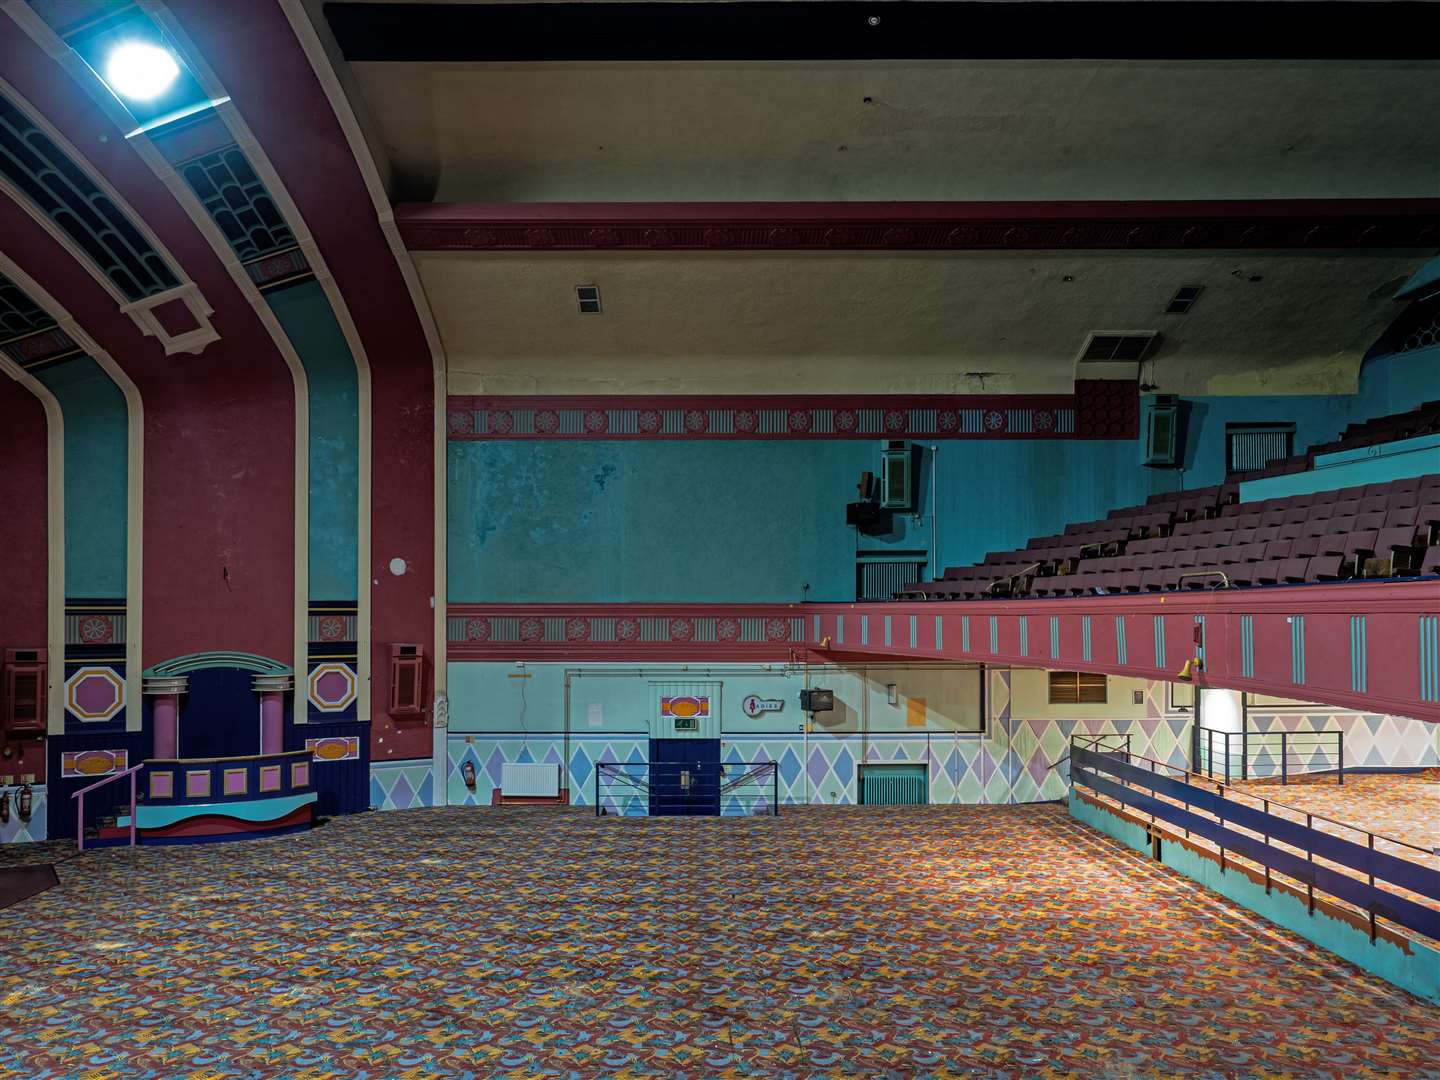 The former Mecca Bingo auditorium